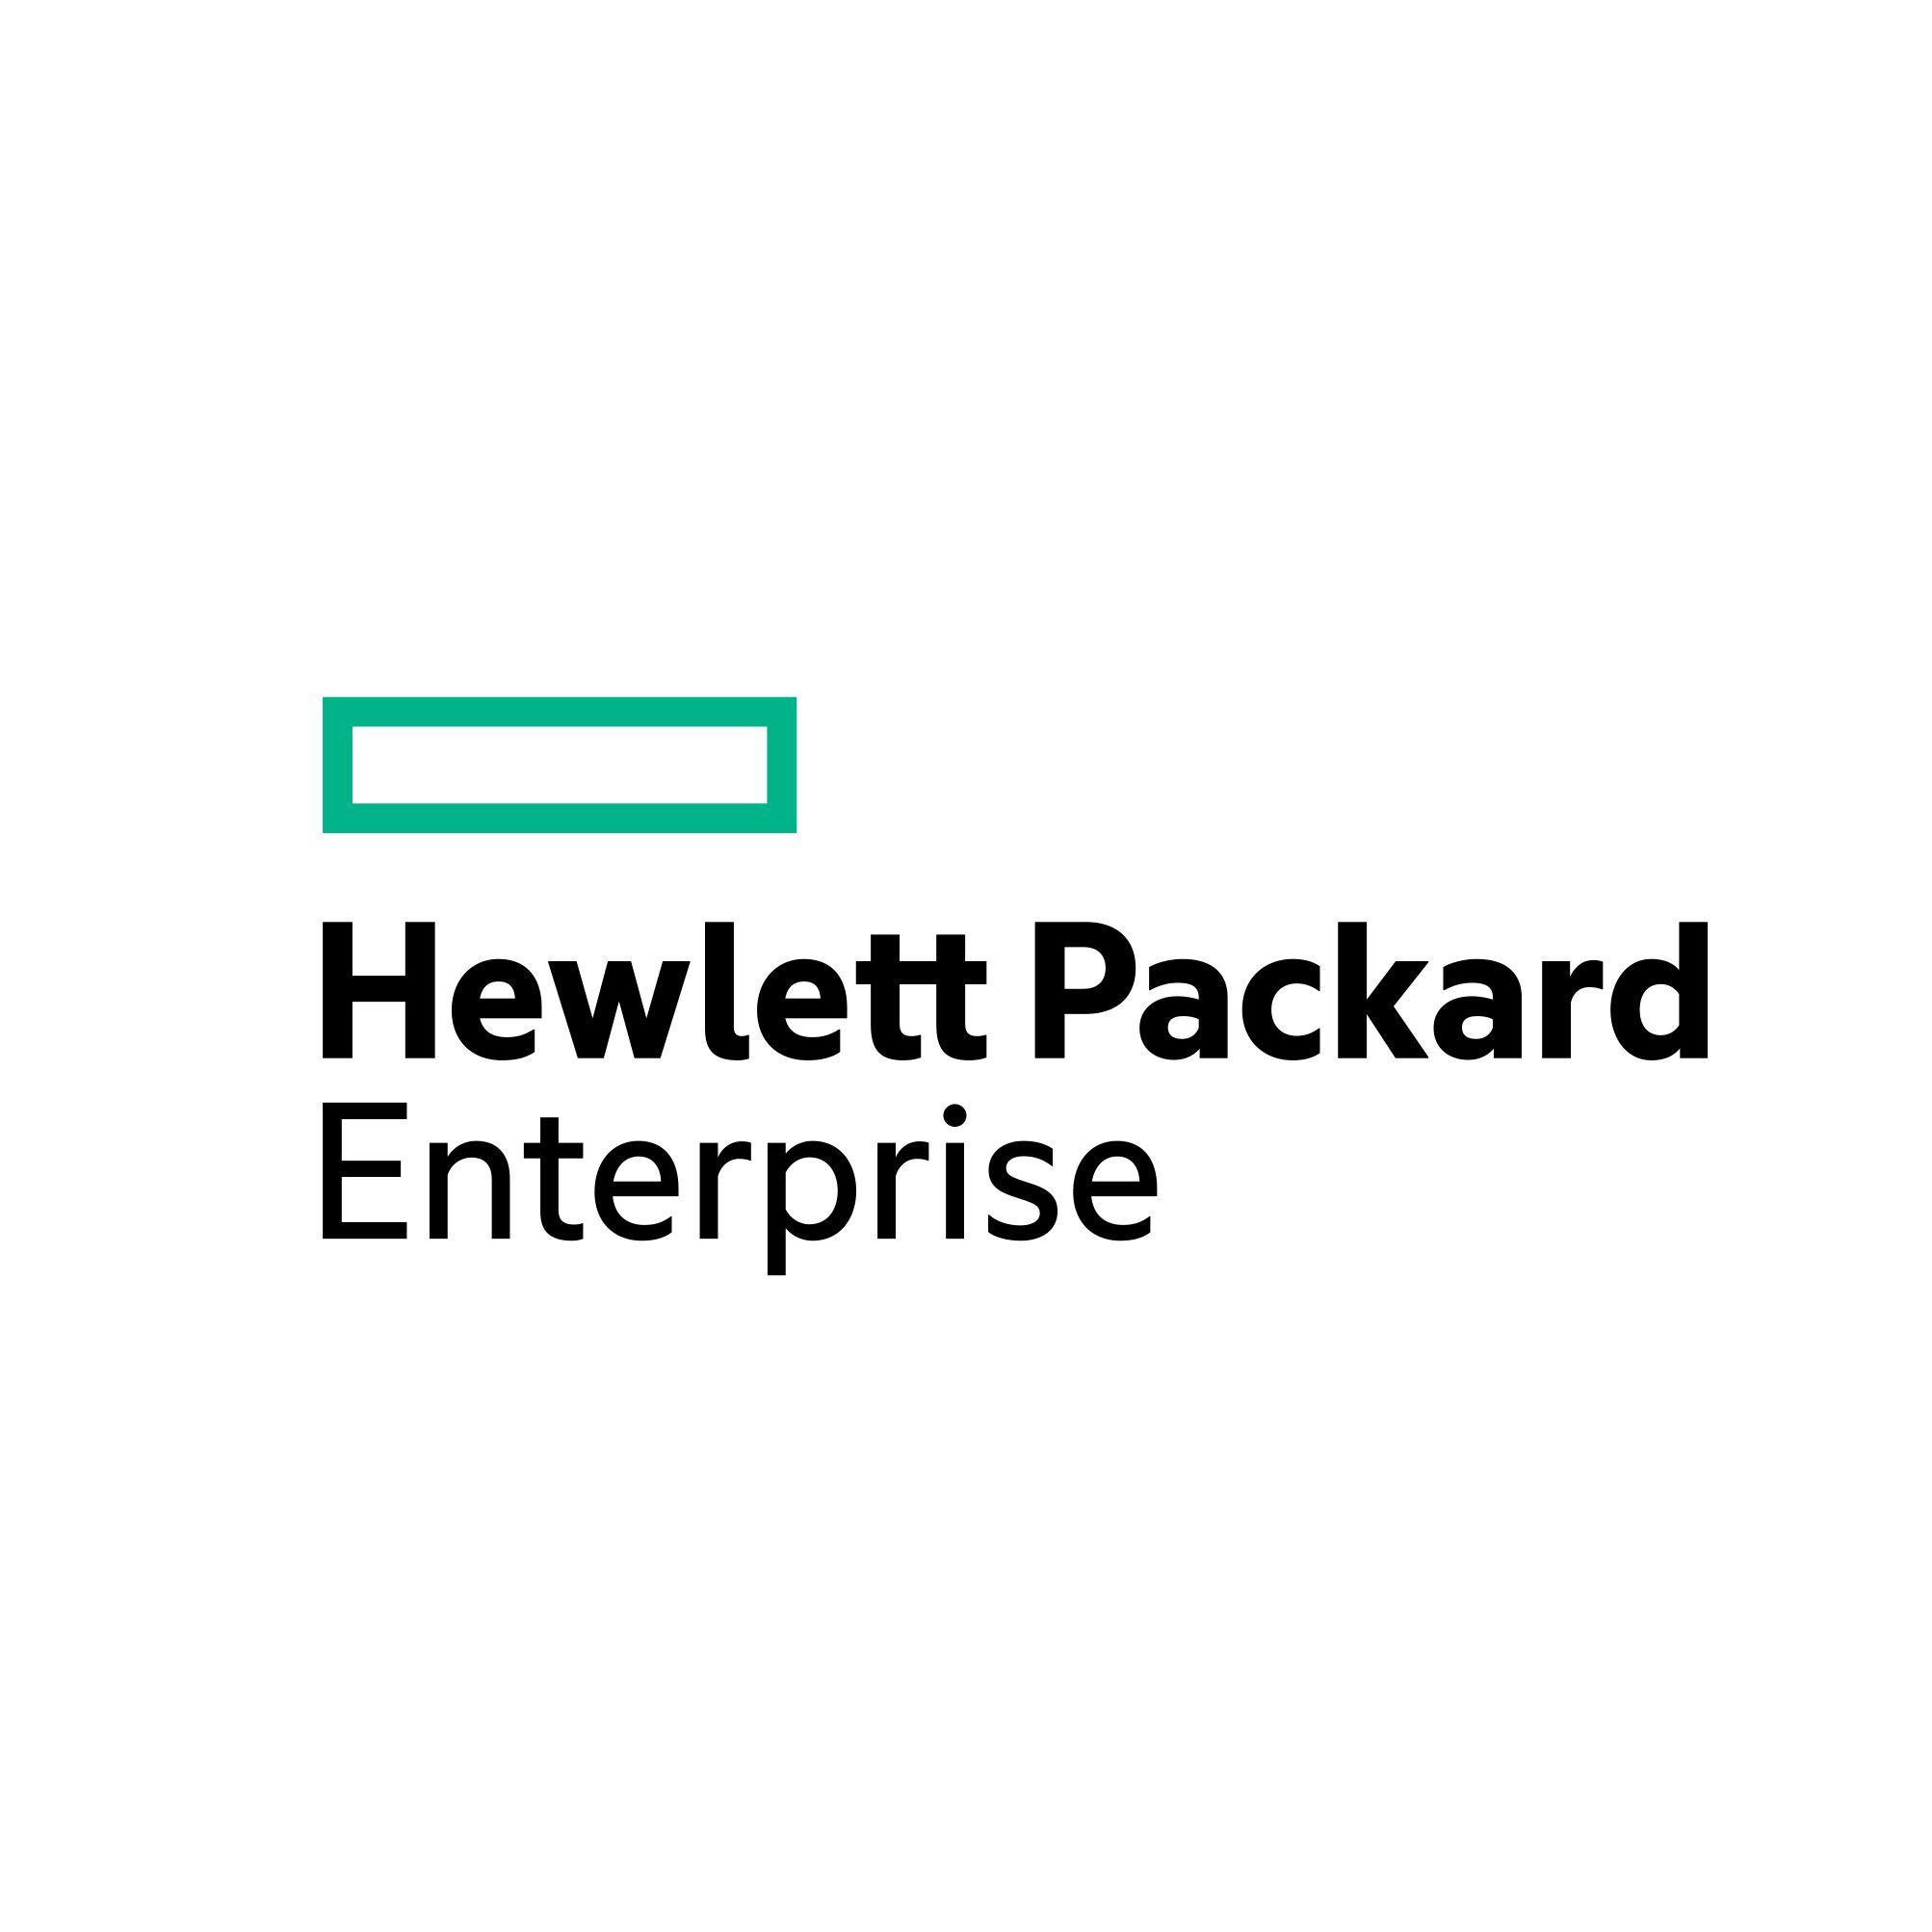 Hewlett packard enterprise. Hewlett Packard Enterprise logo. Диск HPE (Hewlett Packard Enterprise) mm0500eancr. Hewlett Packard Enterprise logo 200 на 200 пикселей.